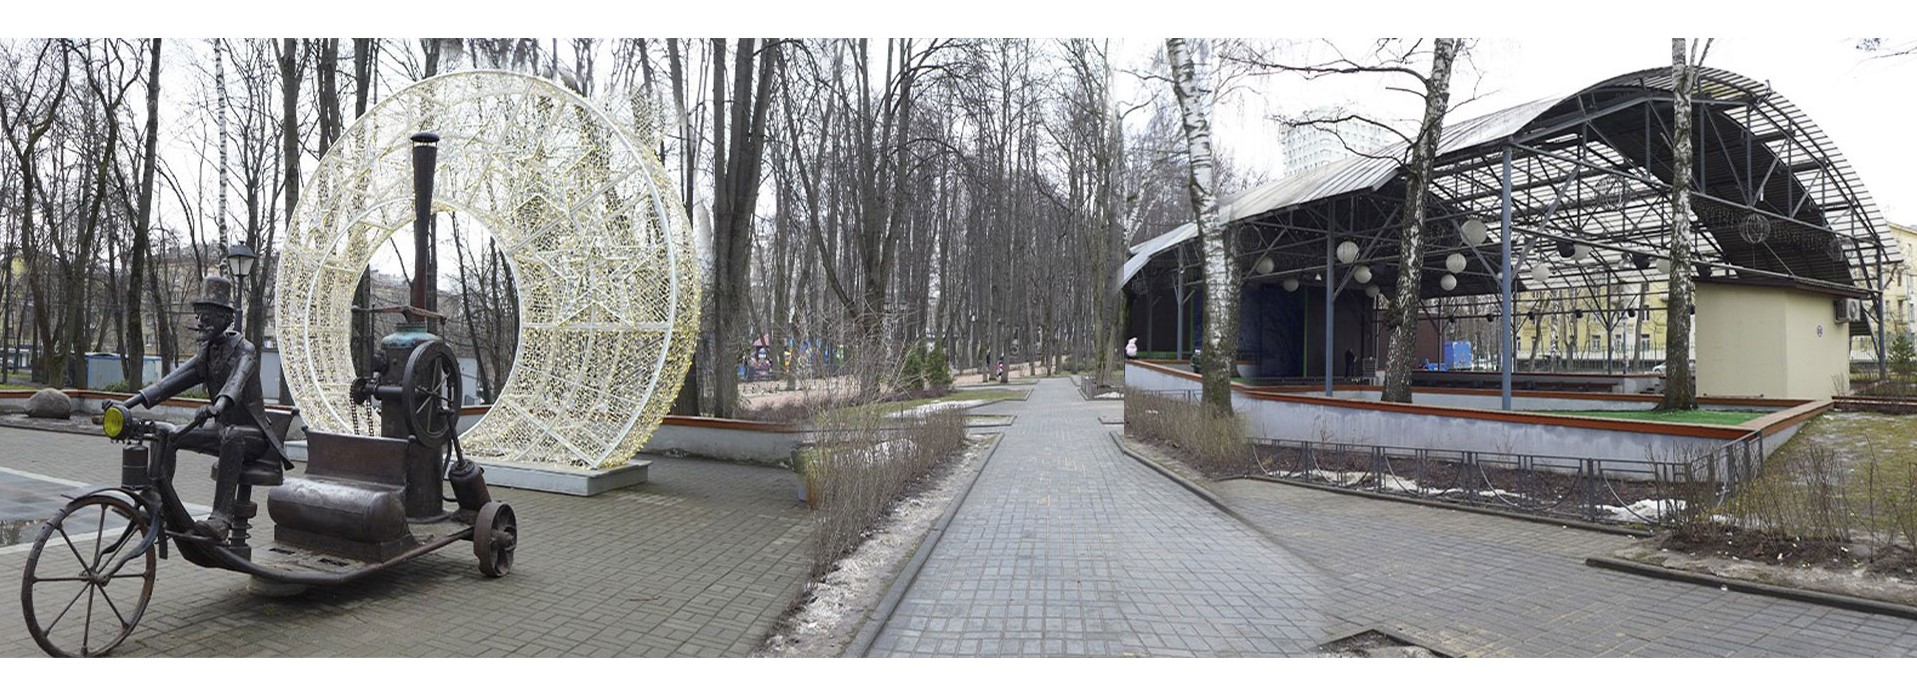 Бабушкинский парк: Зелёный театр, железная скульптура паровой машины